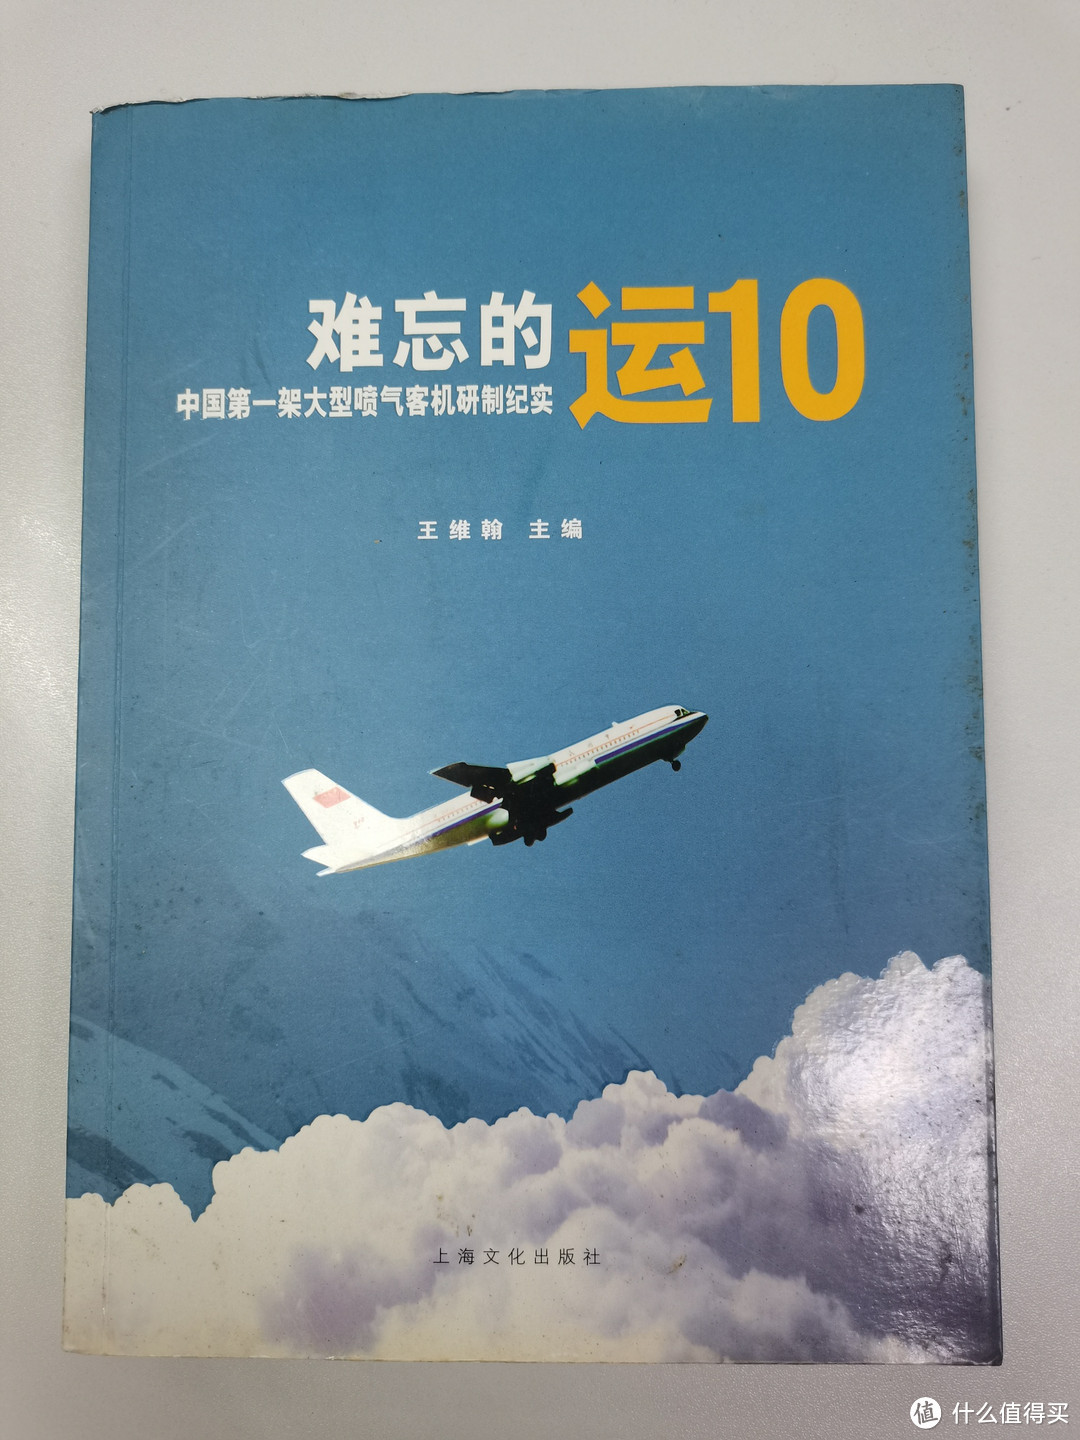 一段难忘的中国大飞机历史，年轻人和我都不太了解的历史。